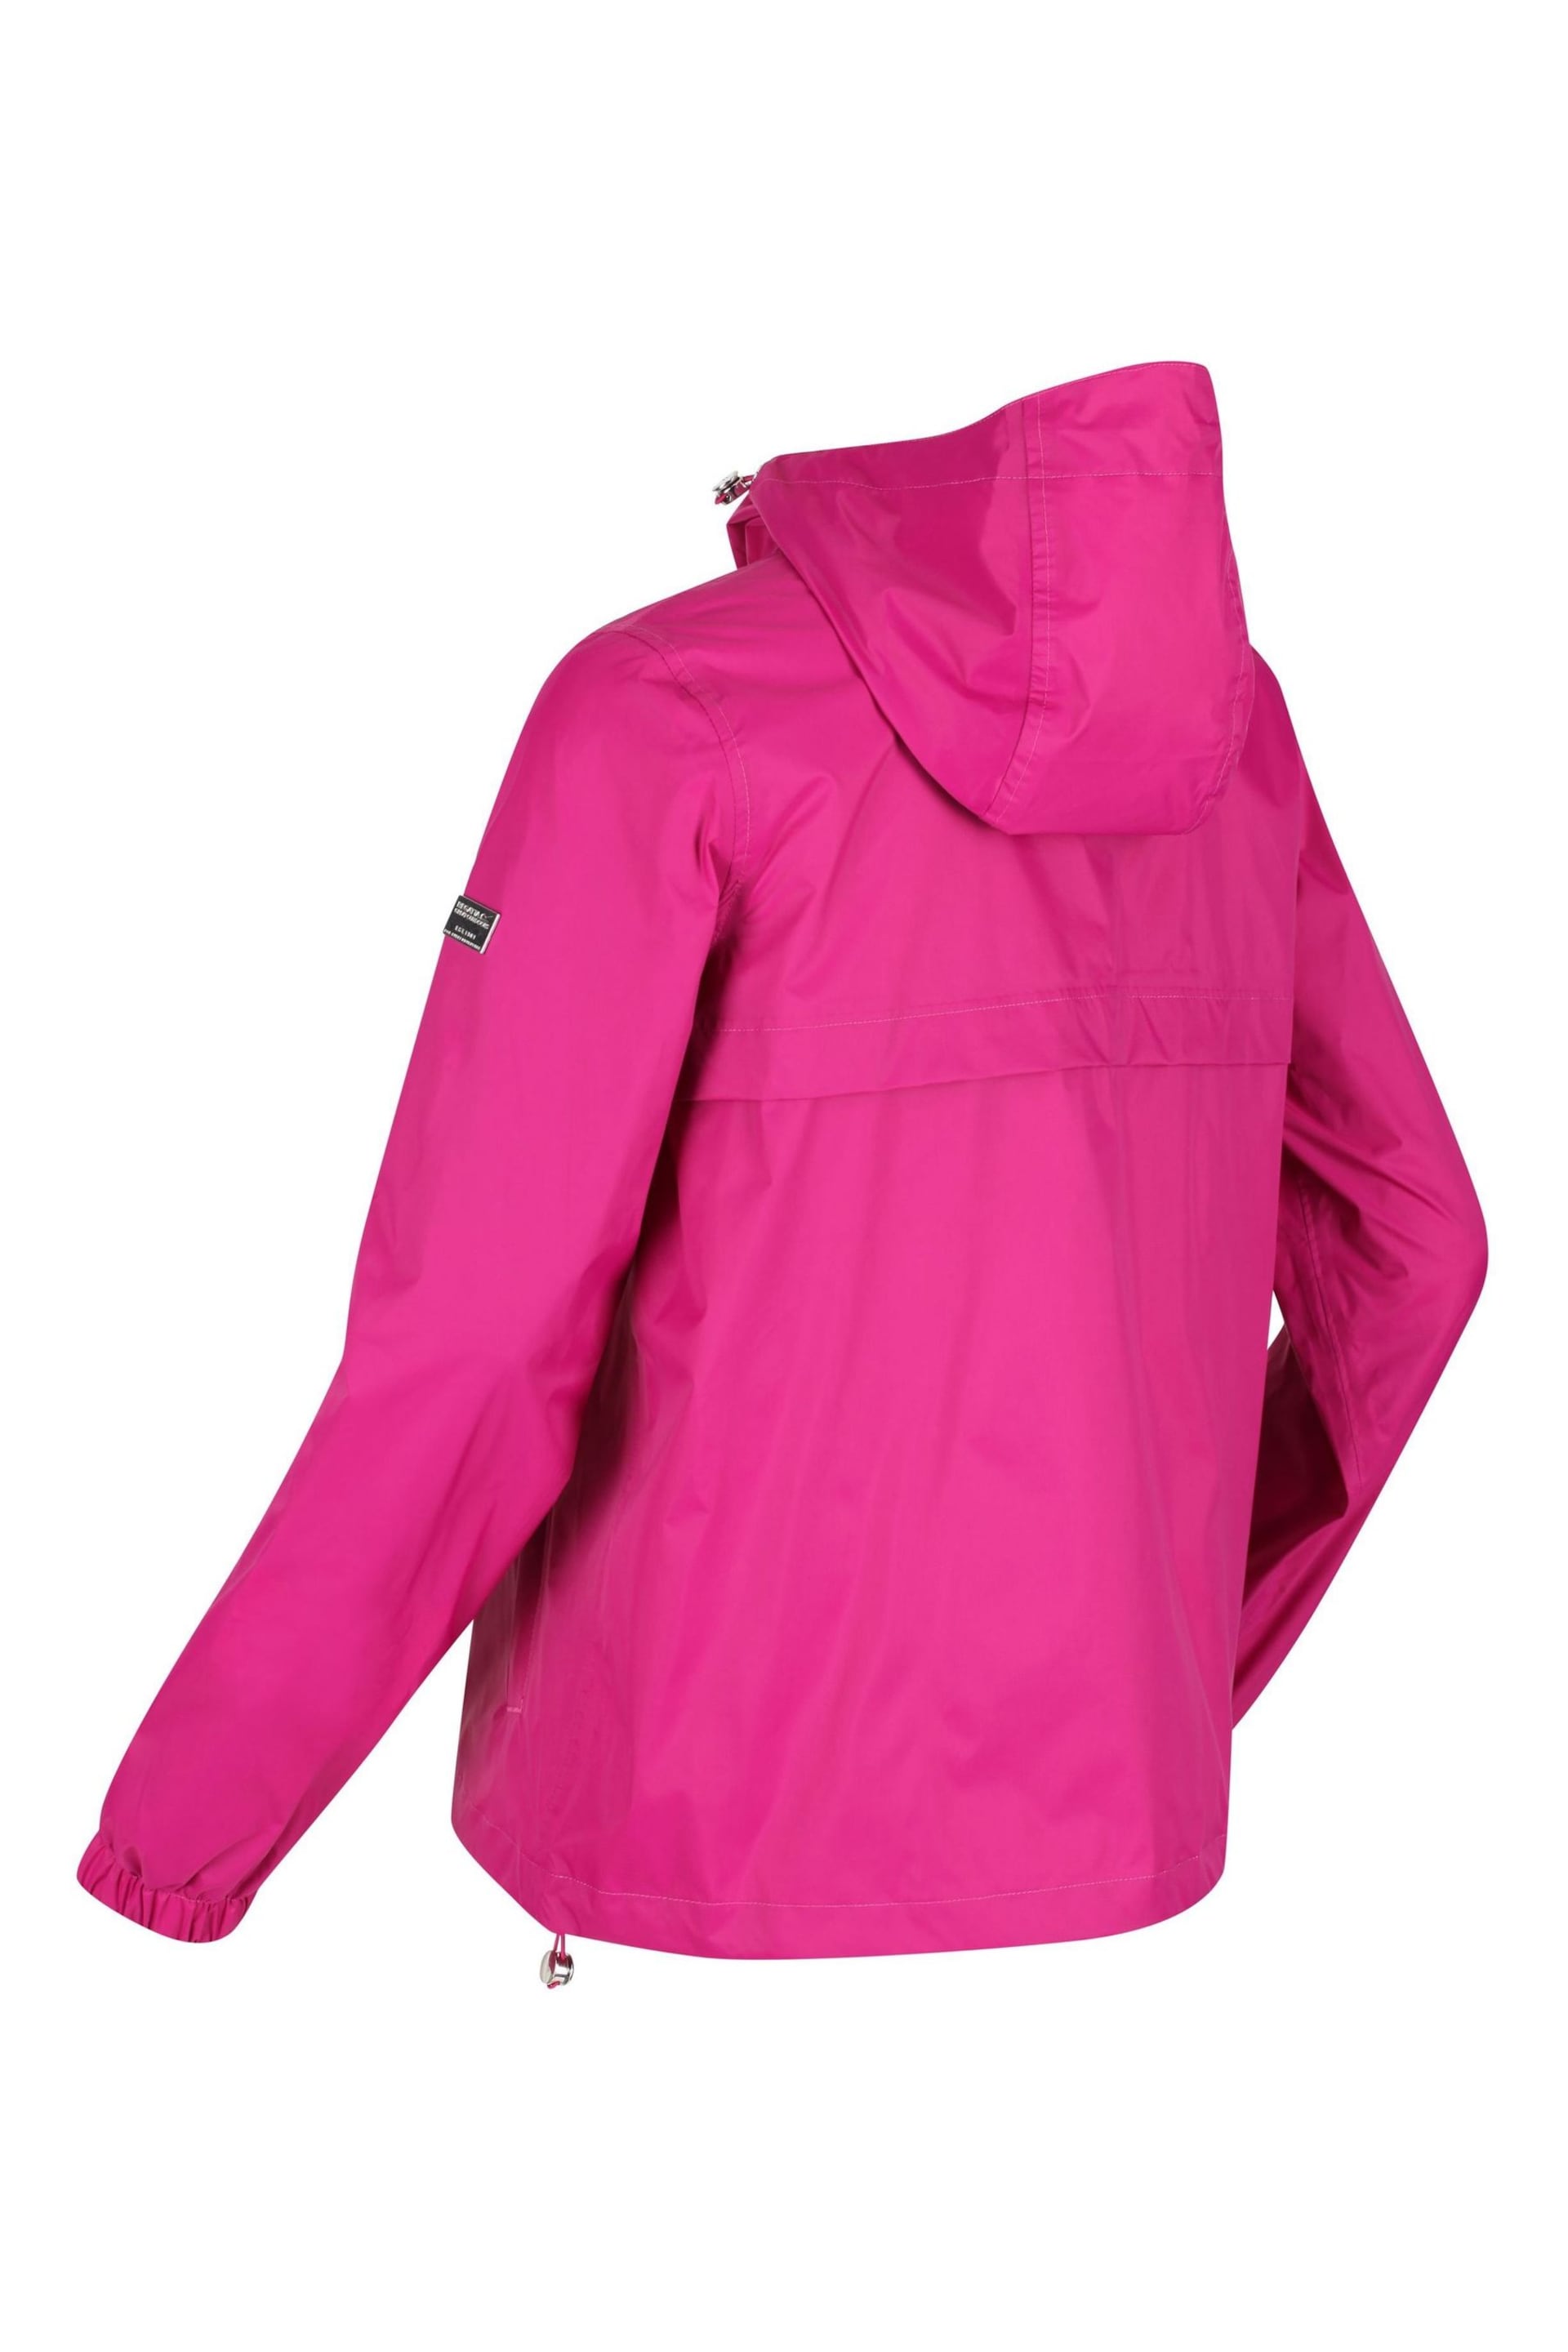 Regatta Pink Lalita Waterproof Jacket - Image 10 of 10